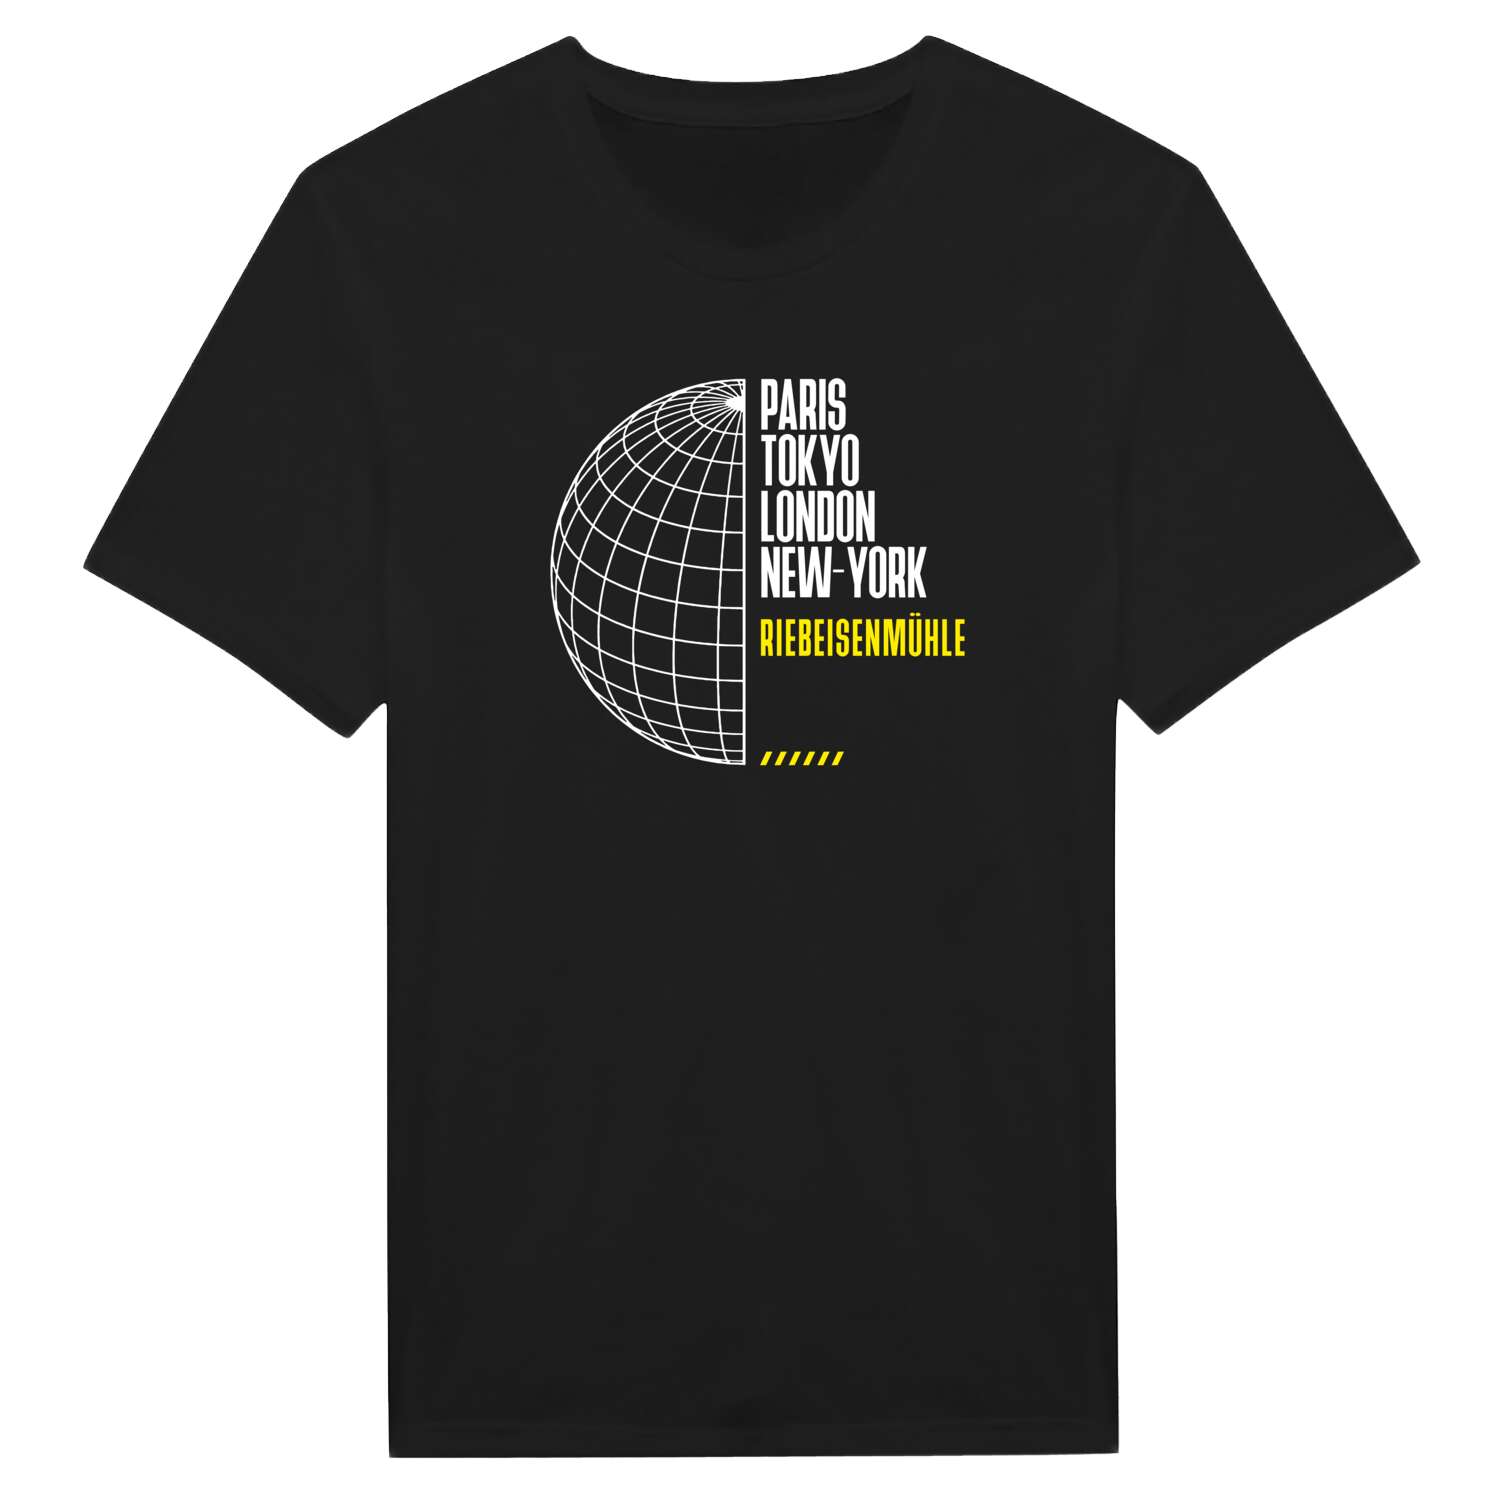 Riebeisenmühle T-Shirt »Paris Tokyo London«